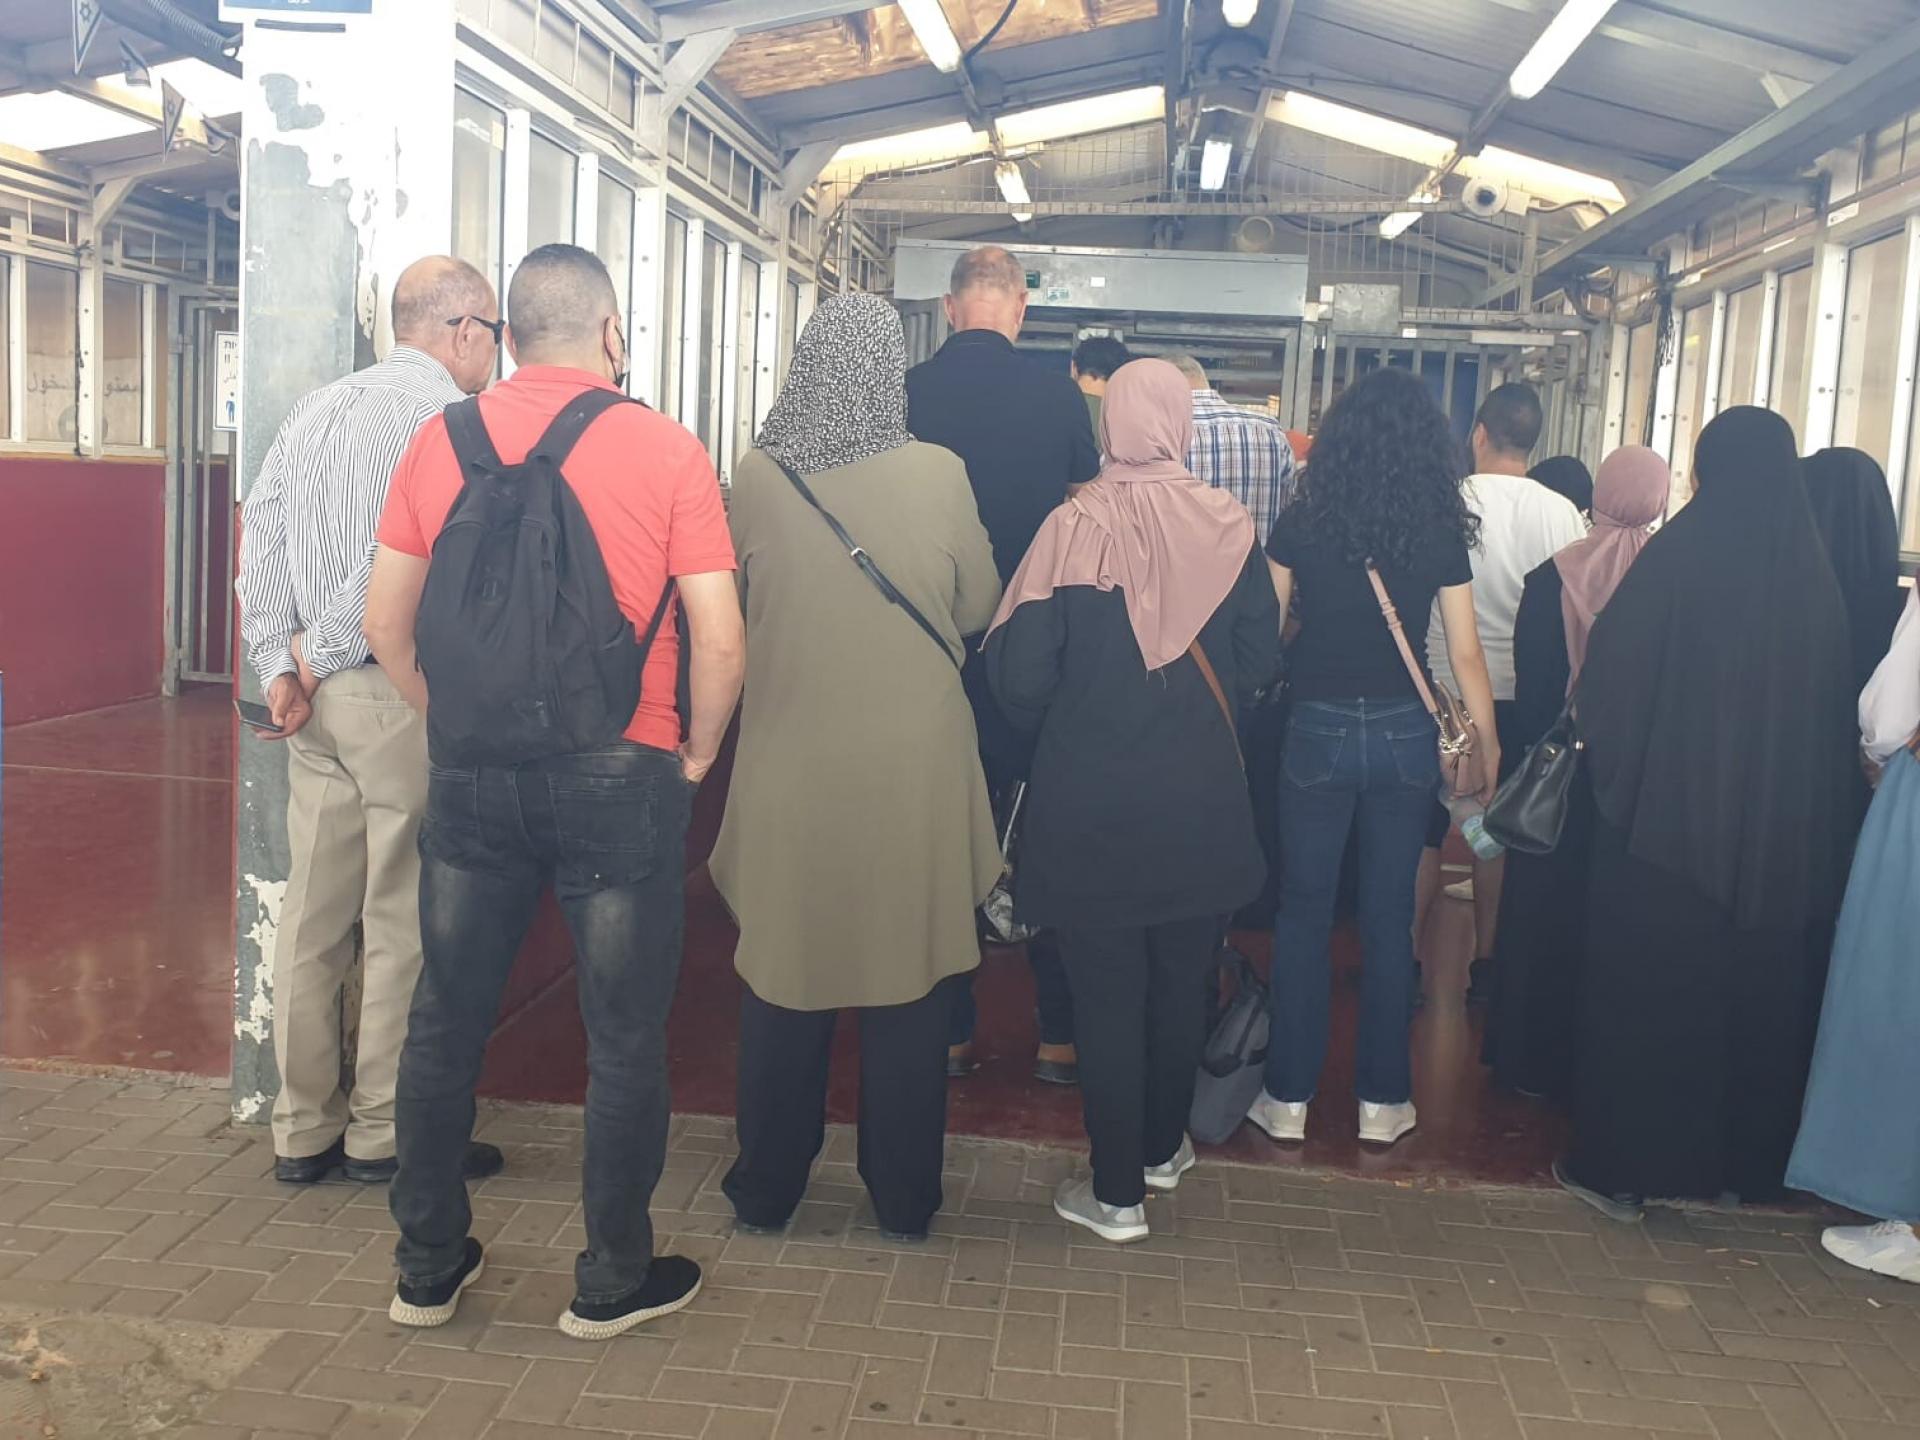 קבוצת פלסטינים ממתינים בתור בתוך מחסום